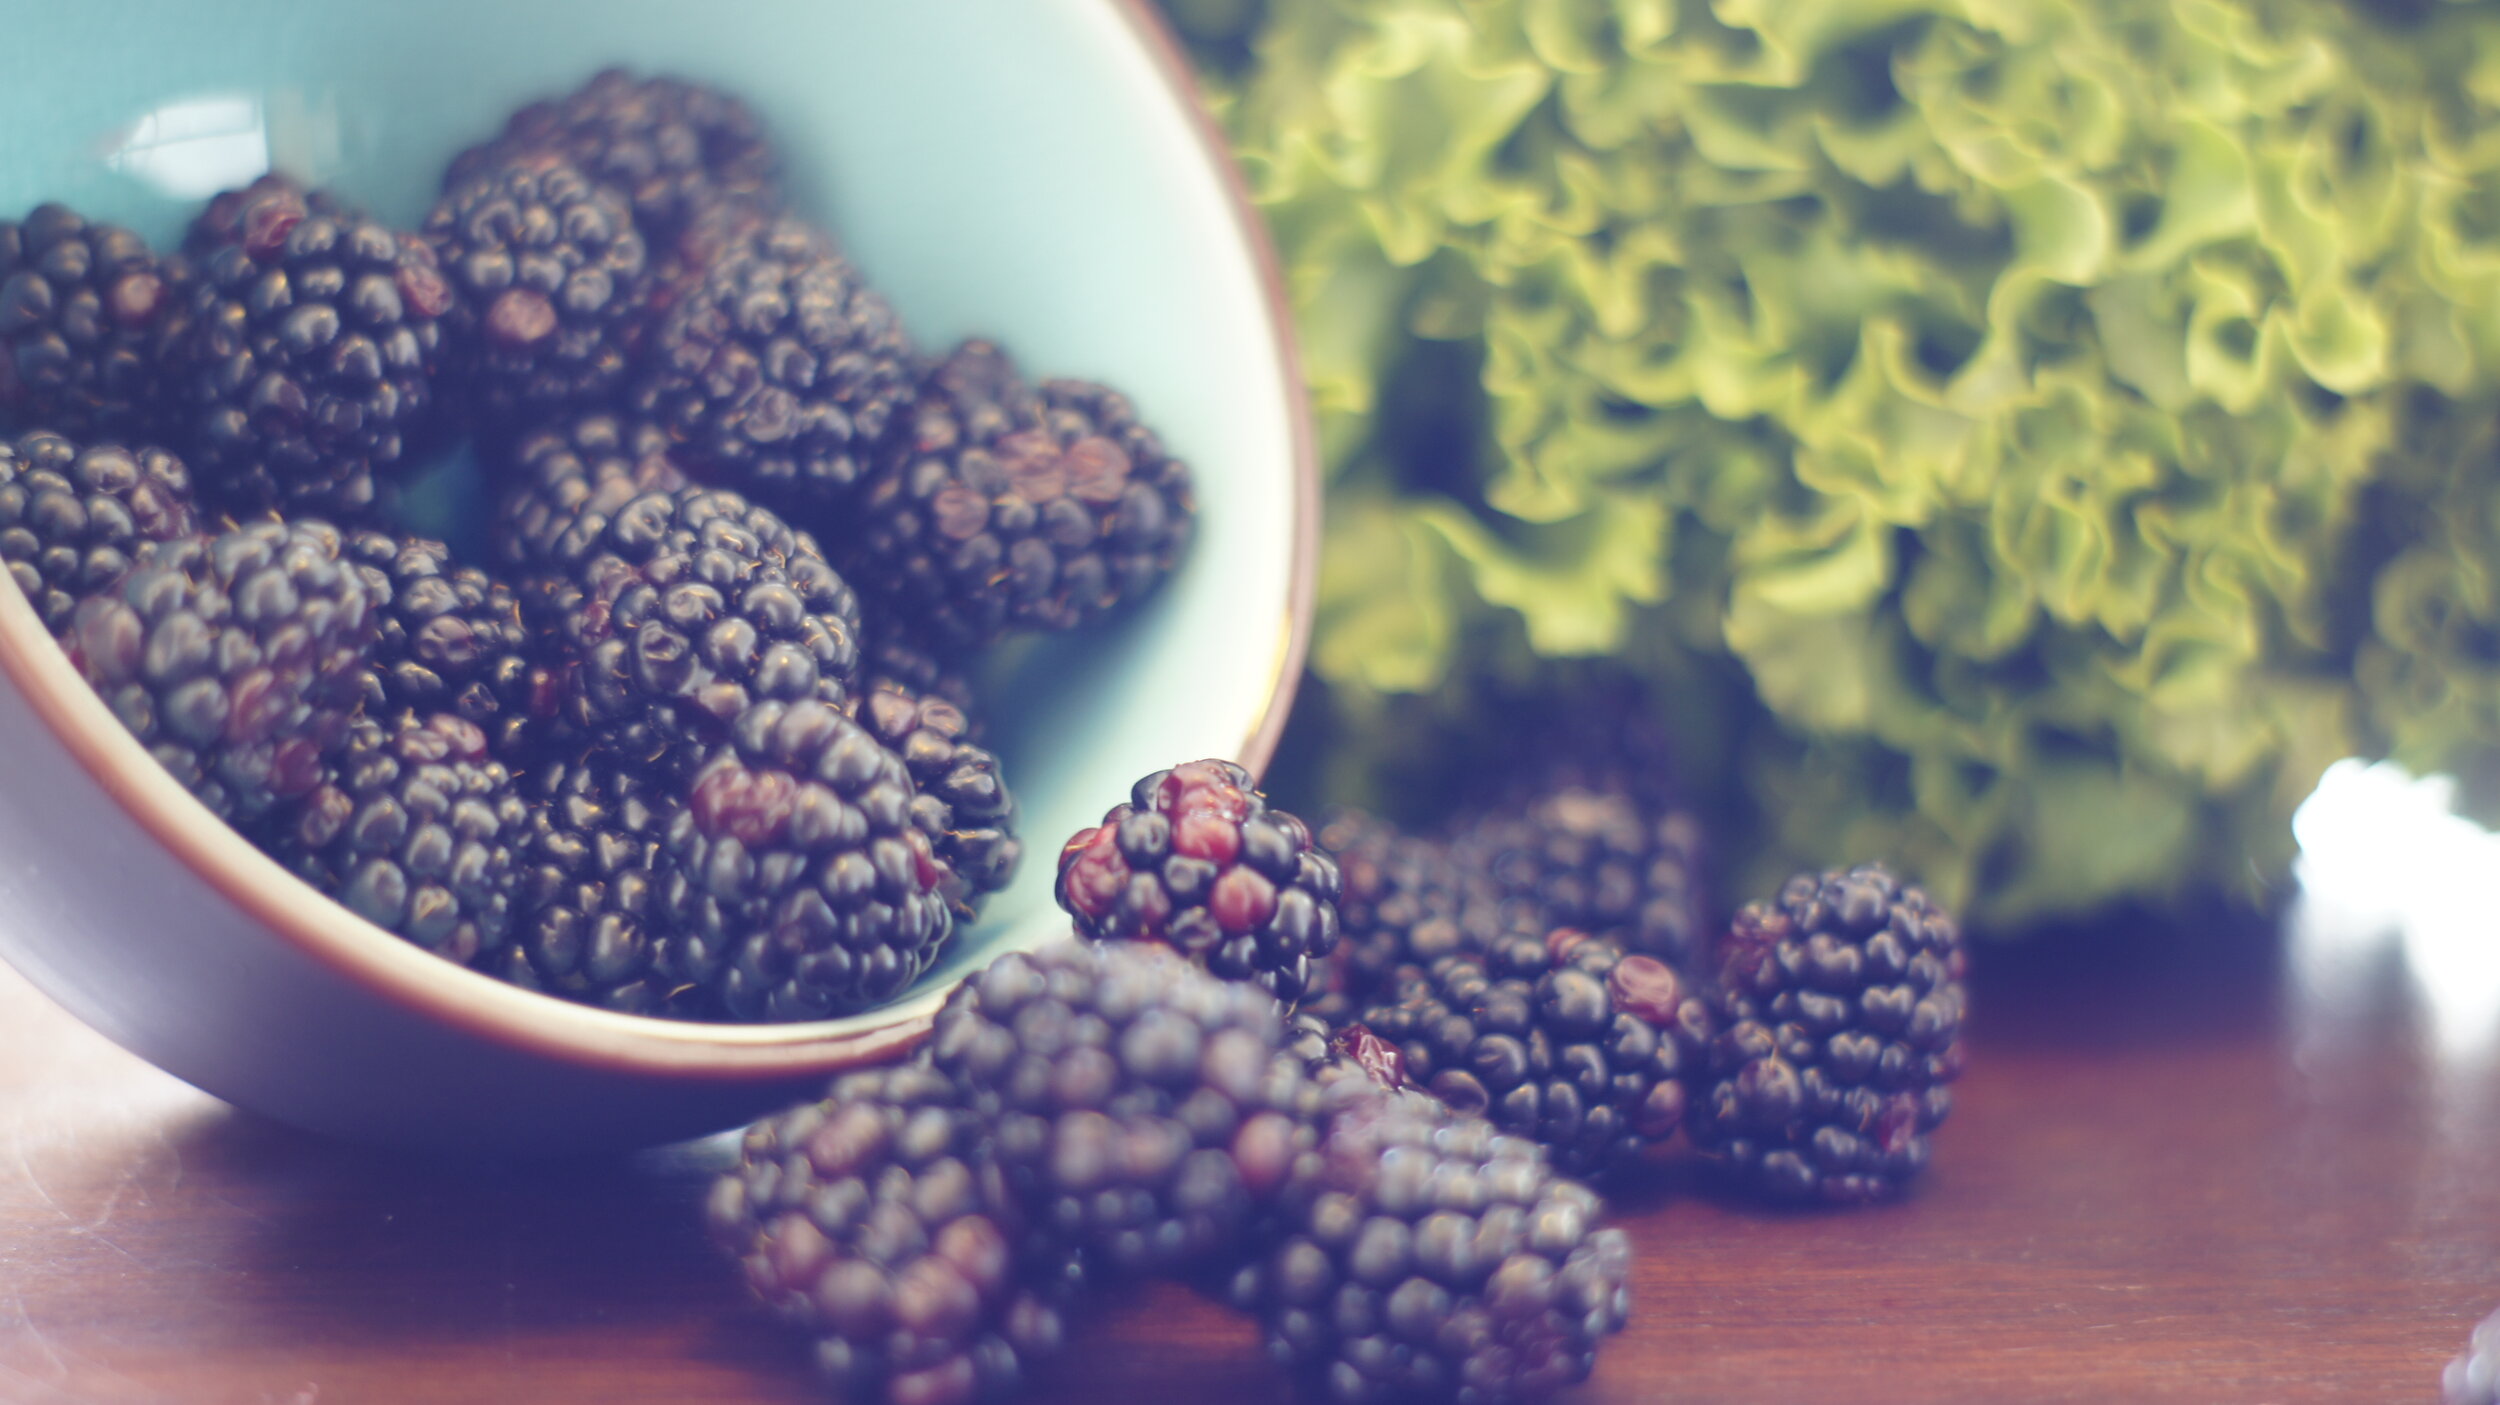 Blackberries not only taste like summer, they’re full of antioxidants too!